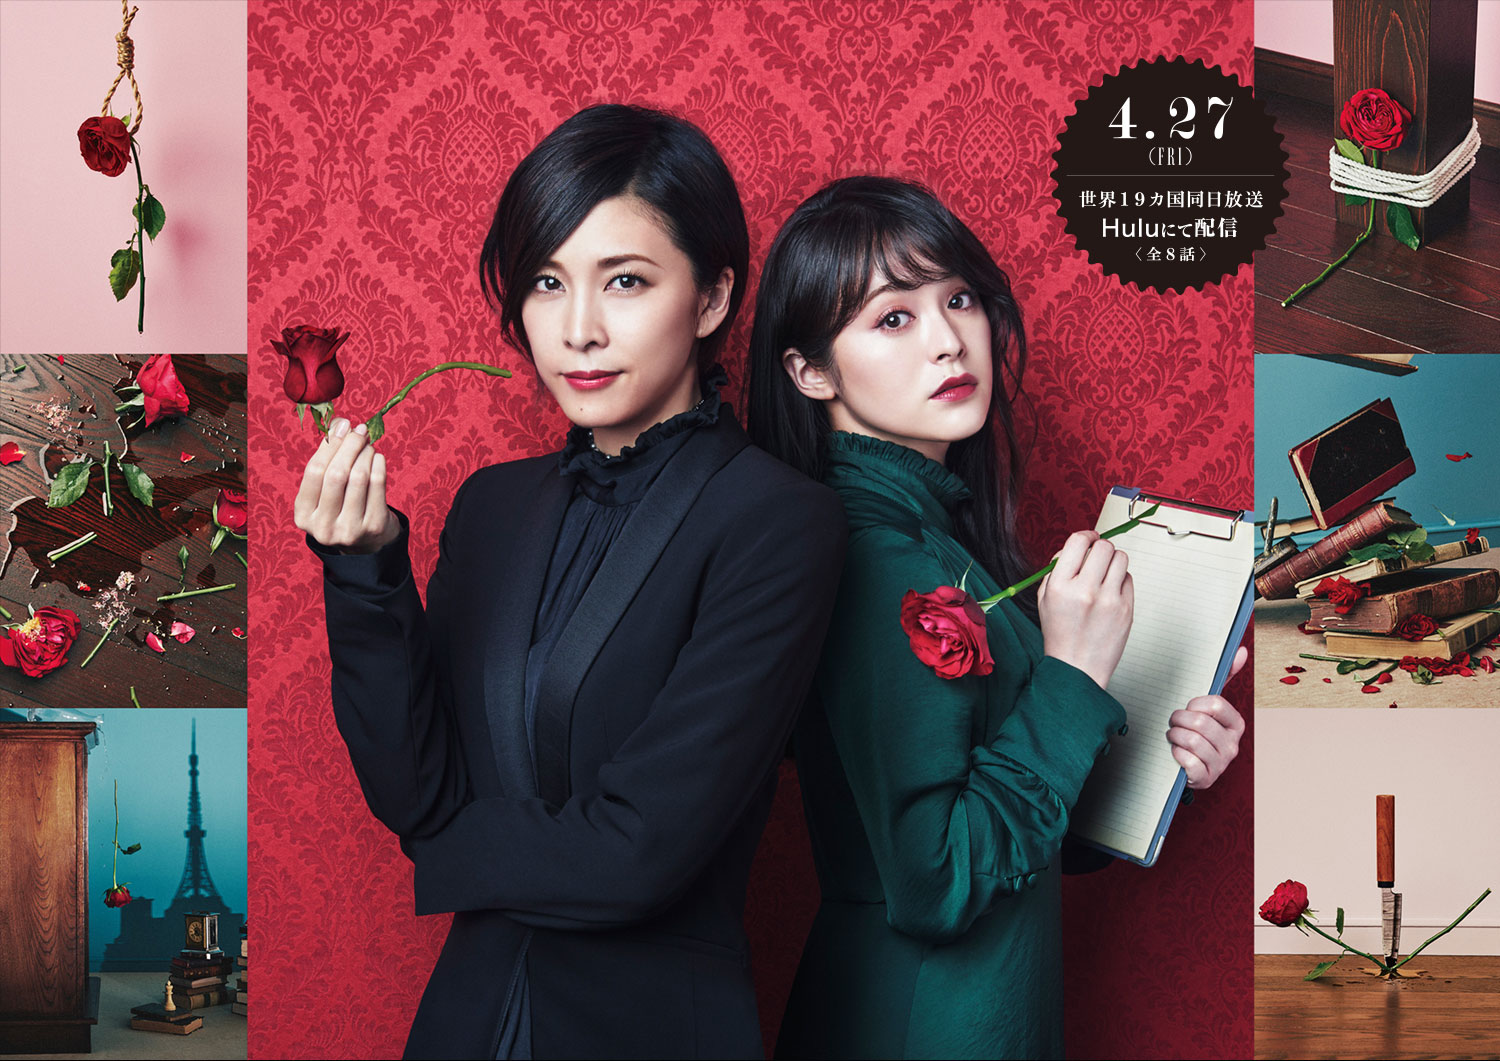 日本还拍了一部女性版的福尔摩斯，换了编剧这么多哪部最有魅力？